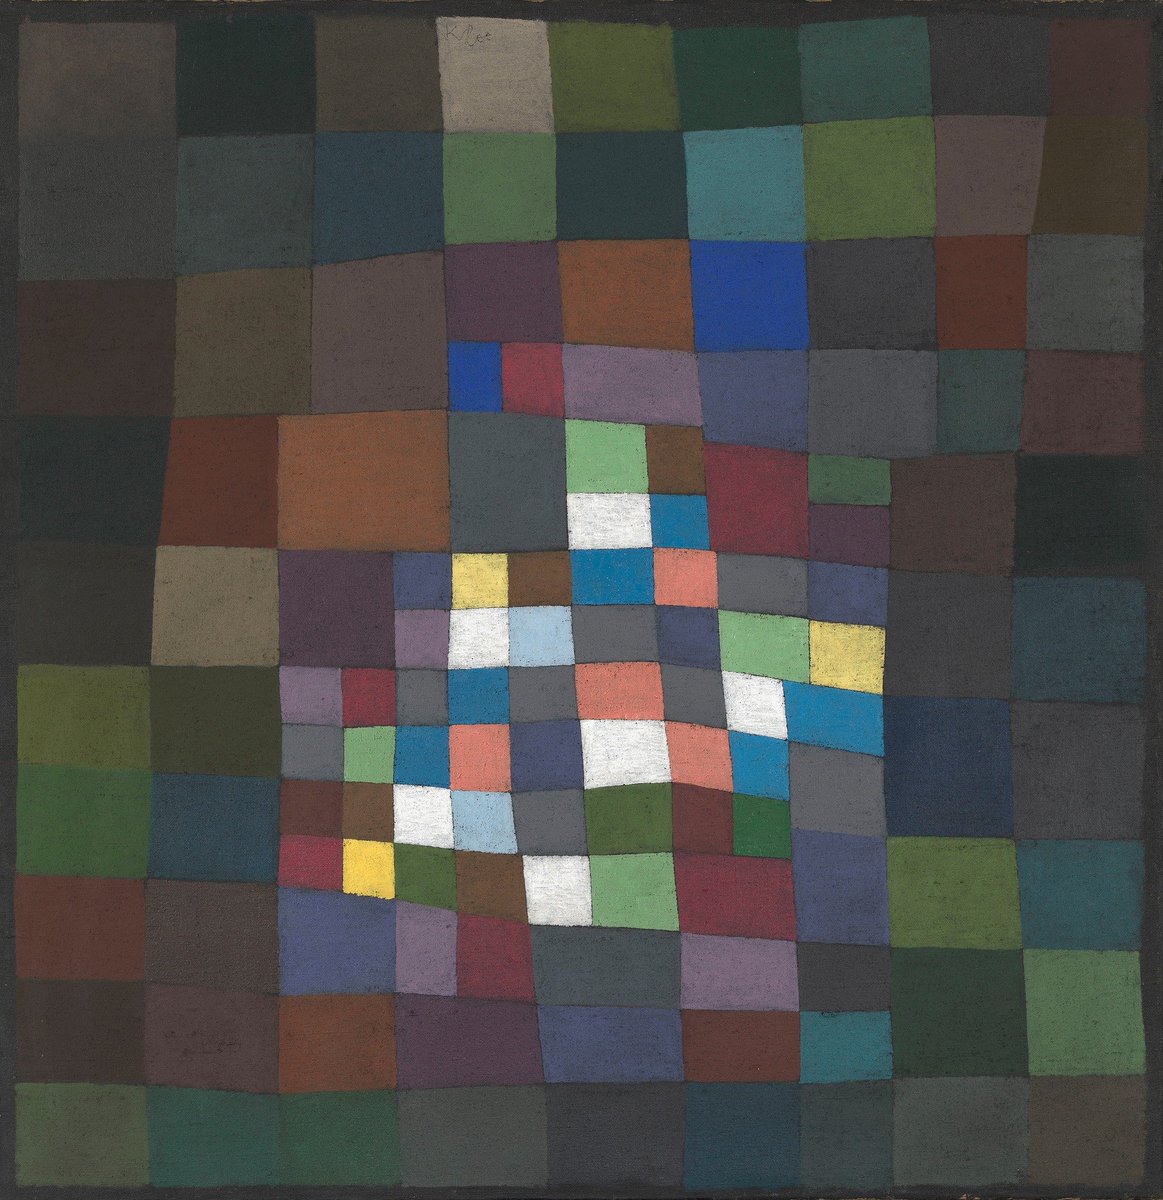 Paul Klee: 'Blooming,' 1934 #SpringVibes 😍